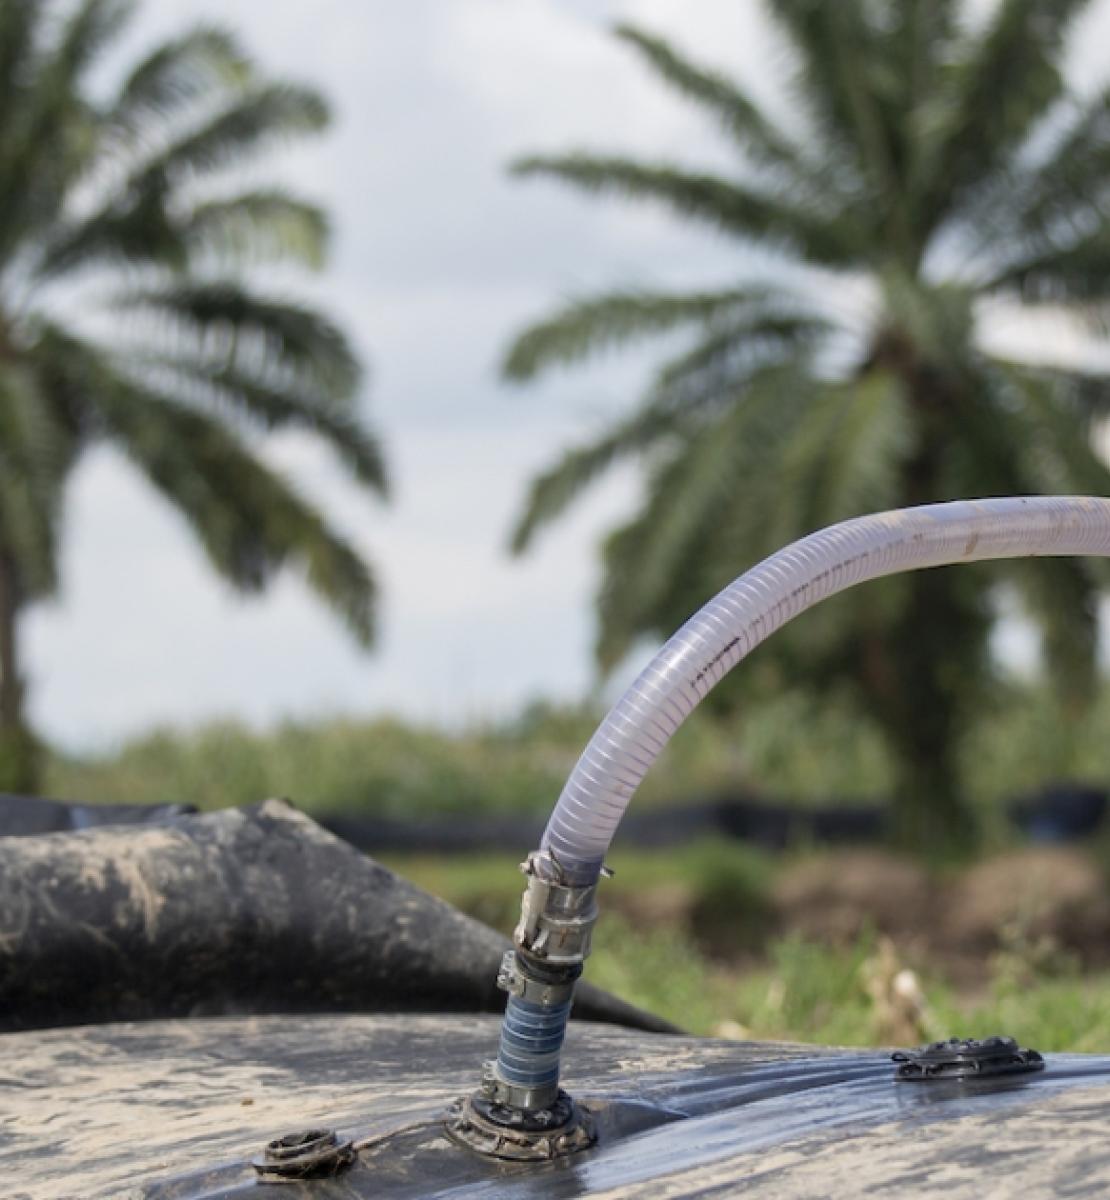 在布隆迪，一名身穿灰色裤子和无袖T恤的年轻人用水管从设置在两棵棕榈树附近的便携式水坝抽水。